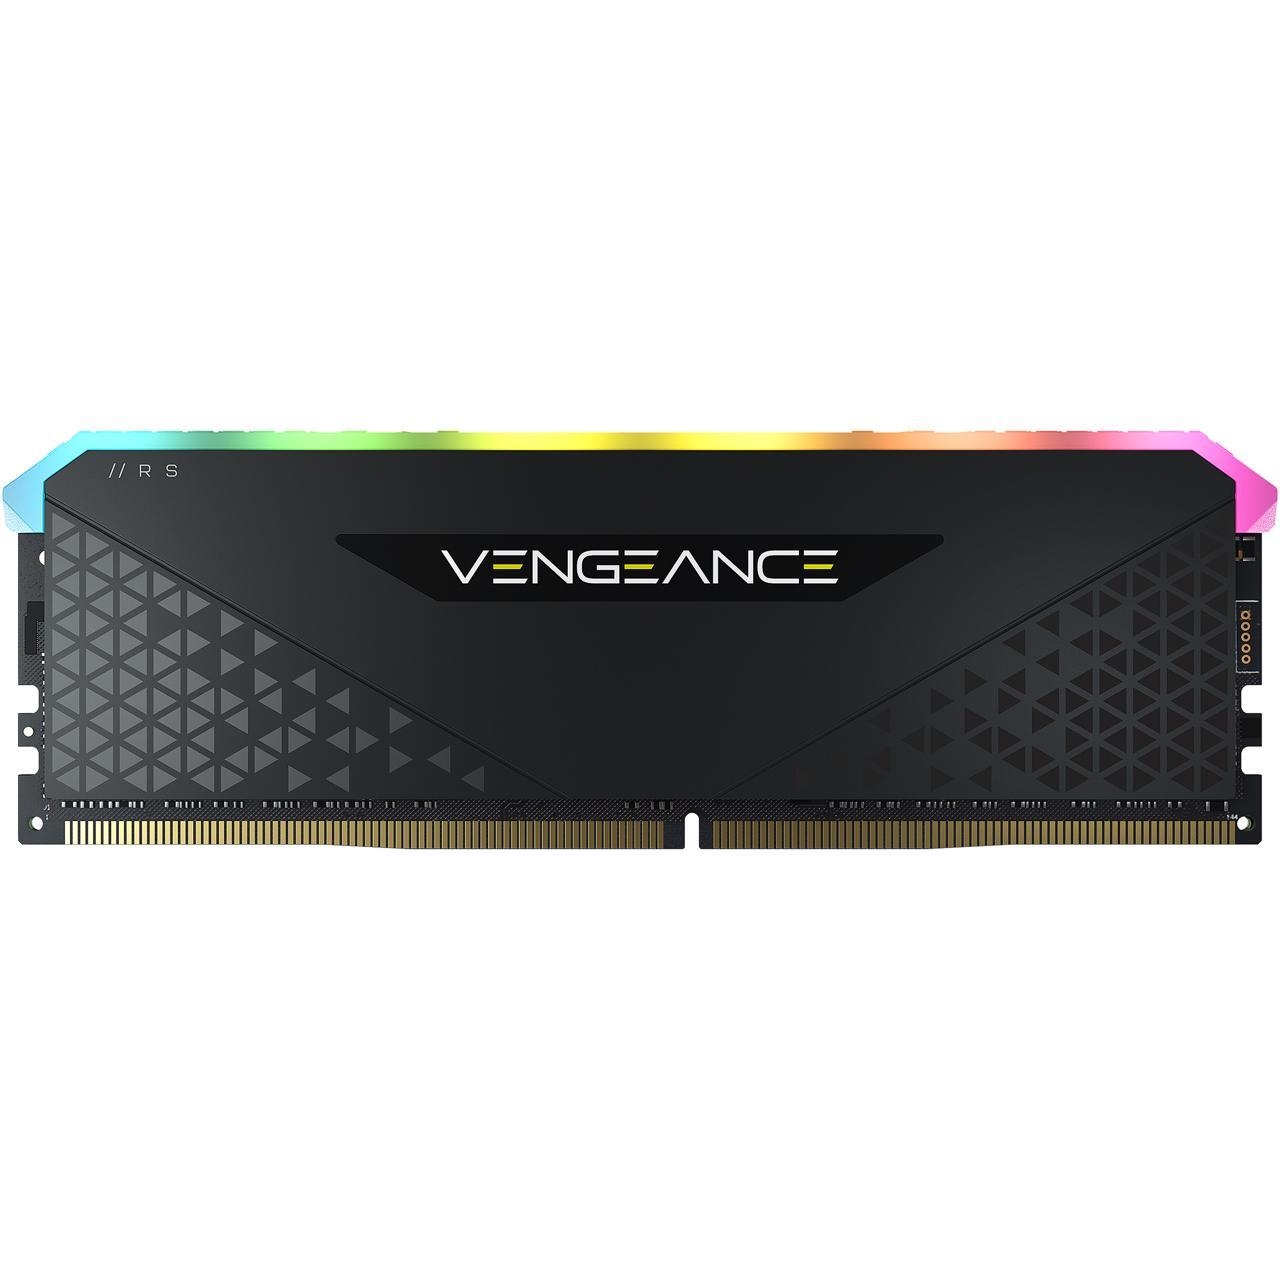 CORSAIR VENGEANCE RGB RS 16GB 3200MHz DDR4 CMG16GX4M1E3200C16 PC RAM